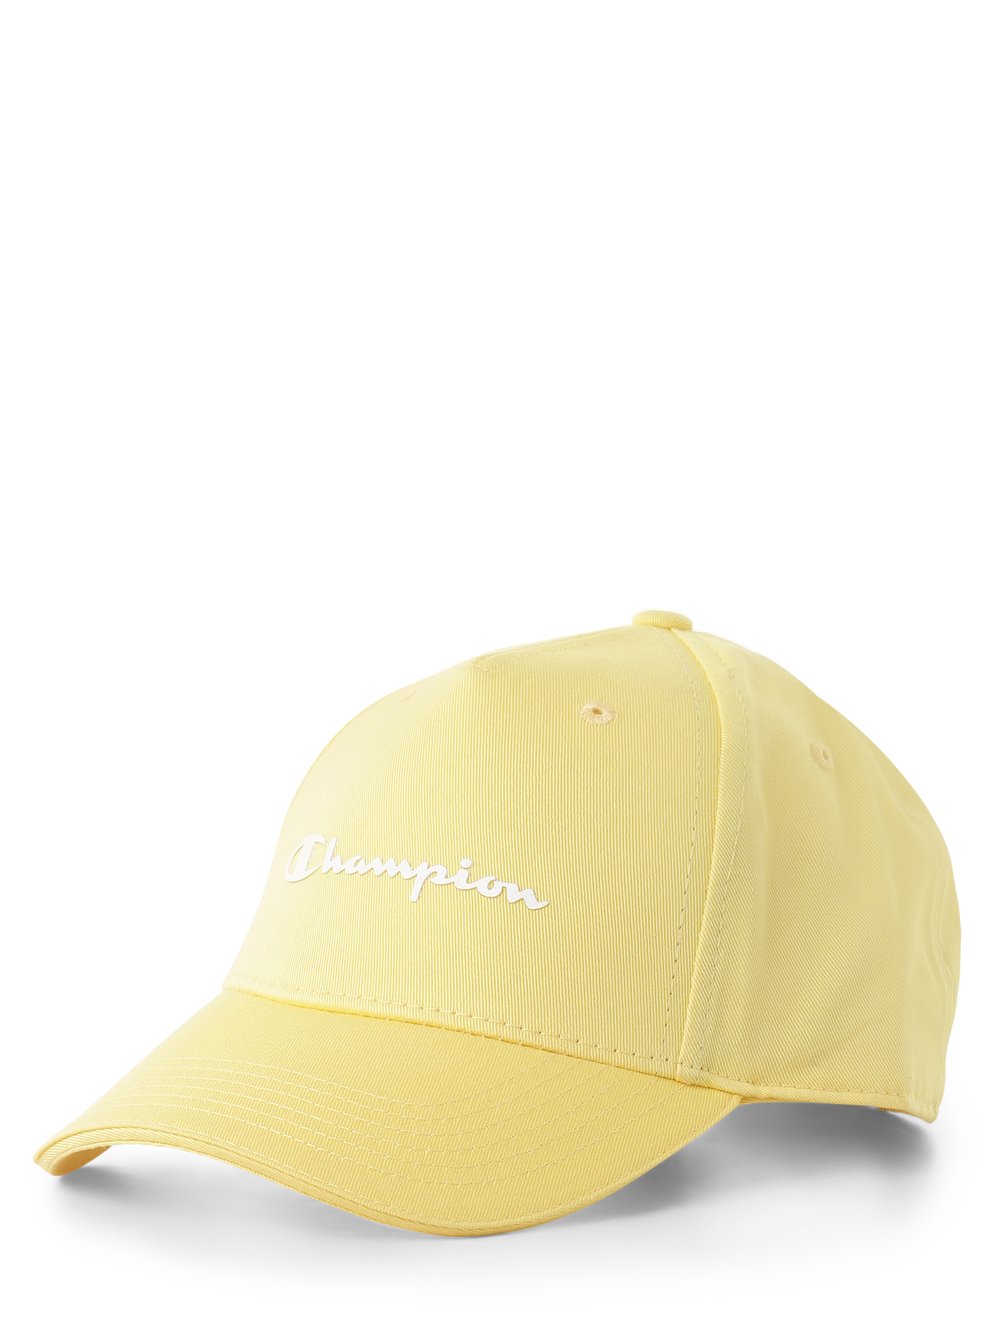 Champion - Męska czapka z daszkiem, żółty